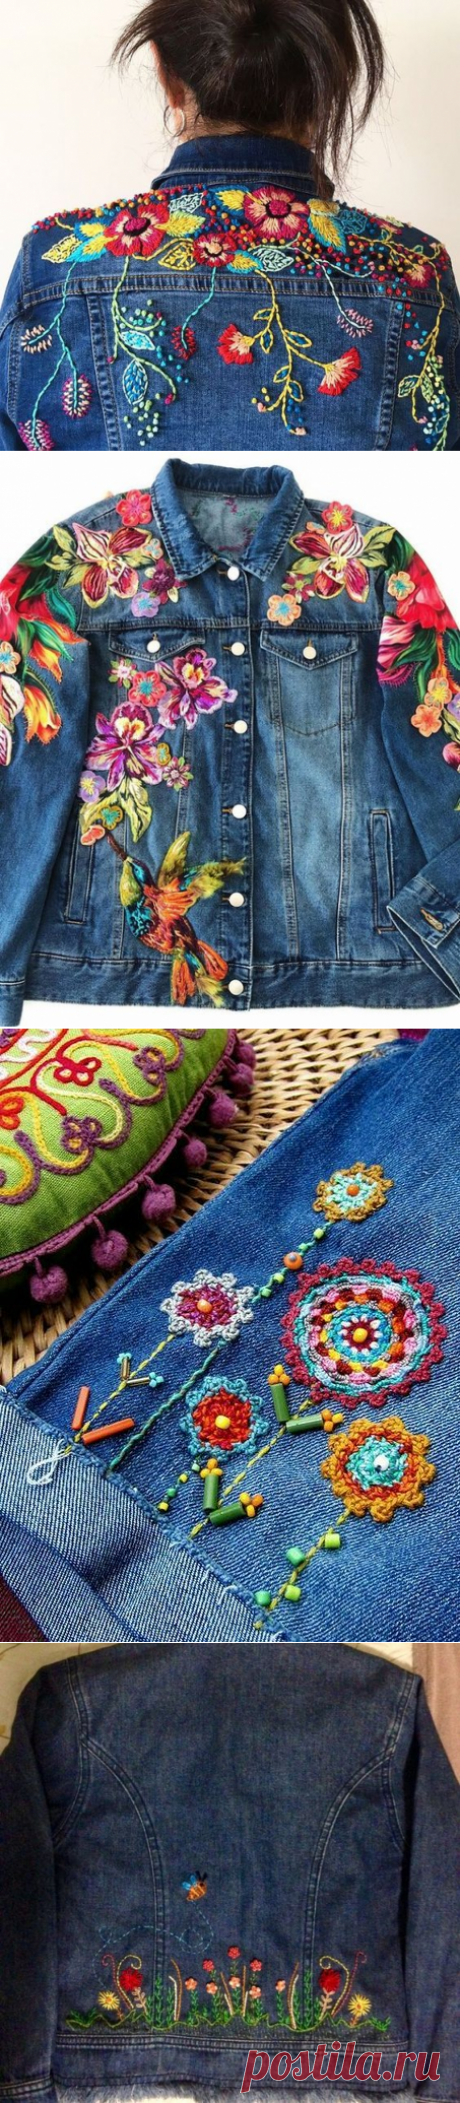 Вышивка на джинсах — Сделай сам, идеи для творчества - DIY Ideas